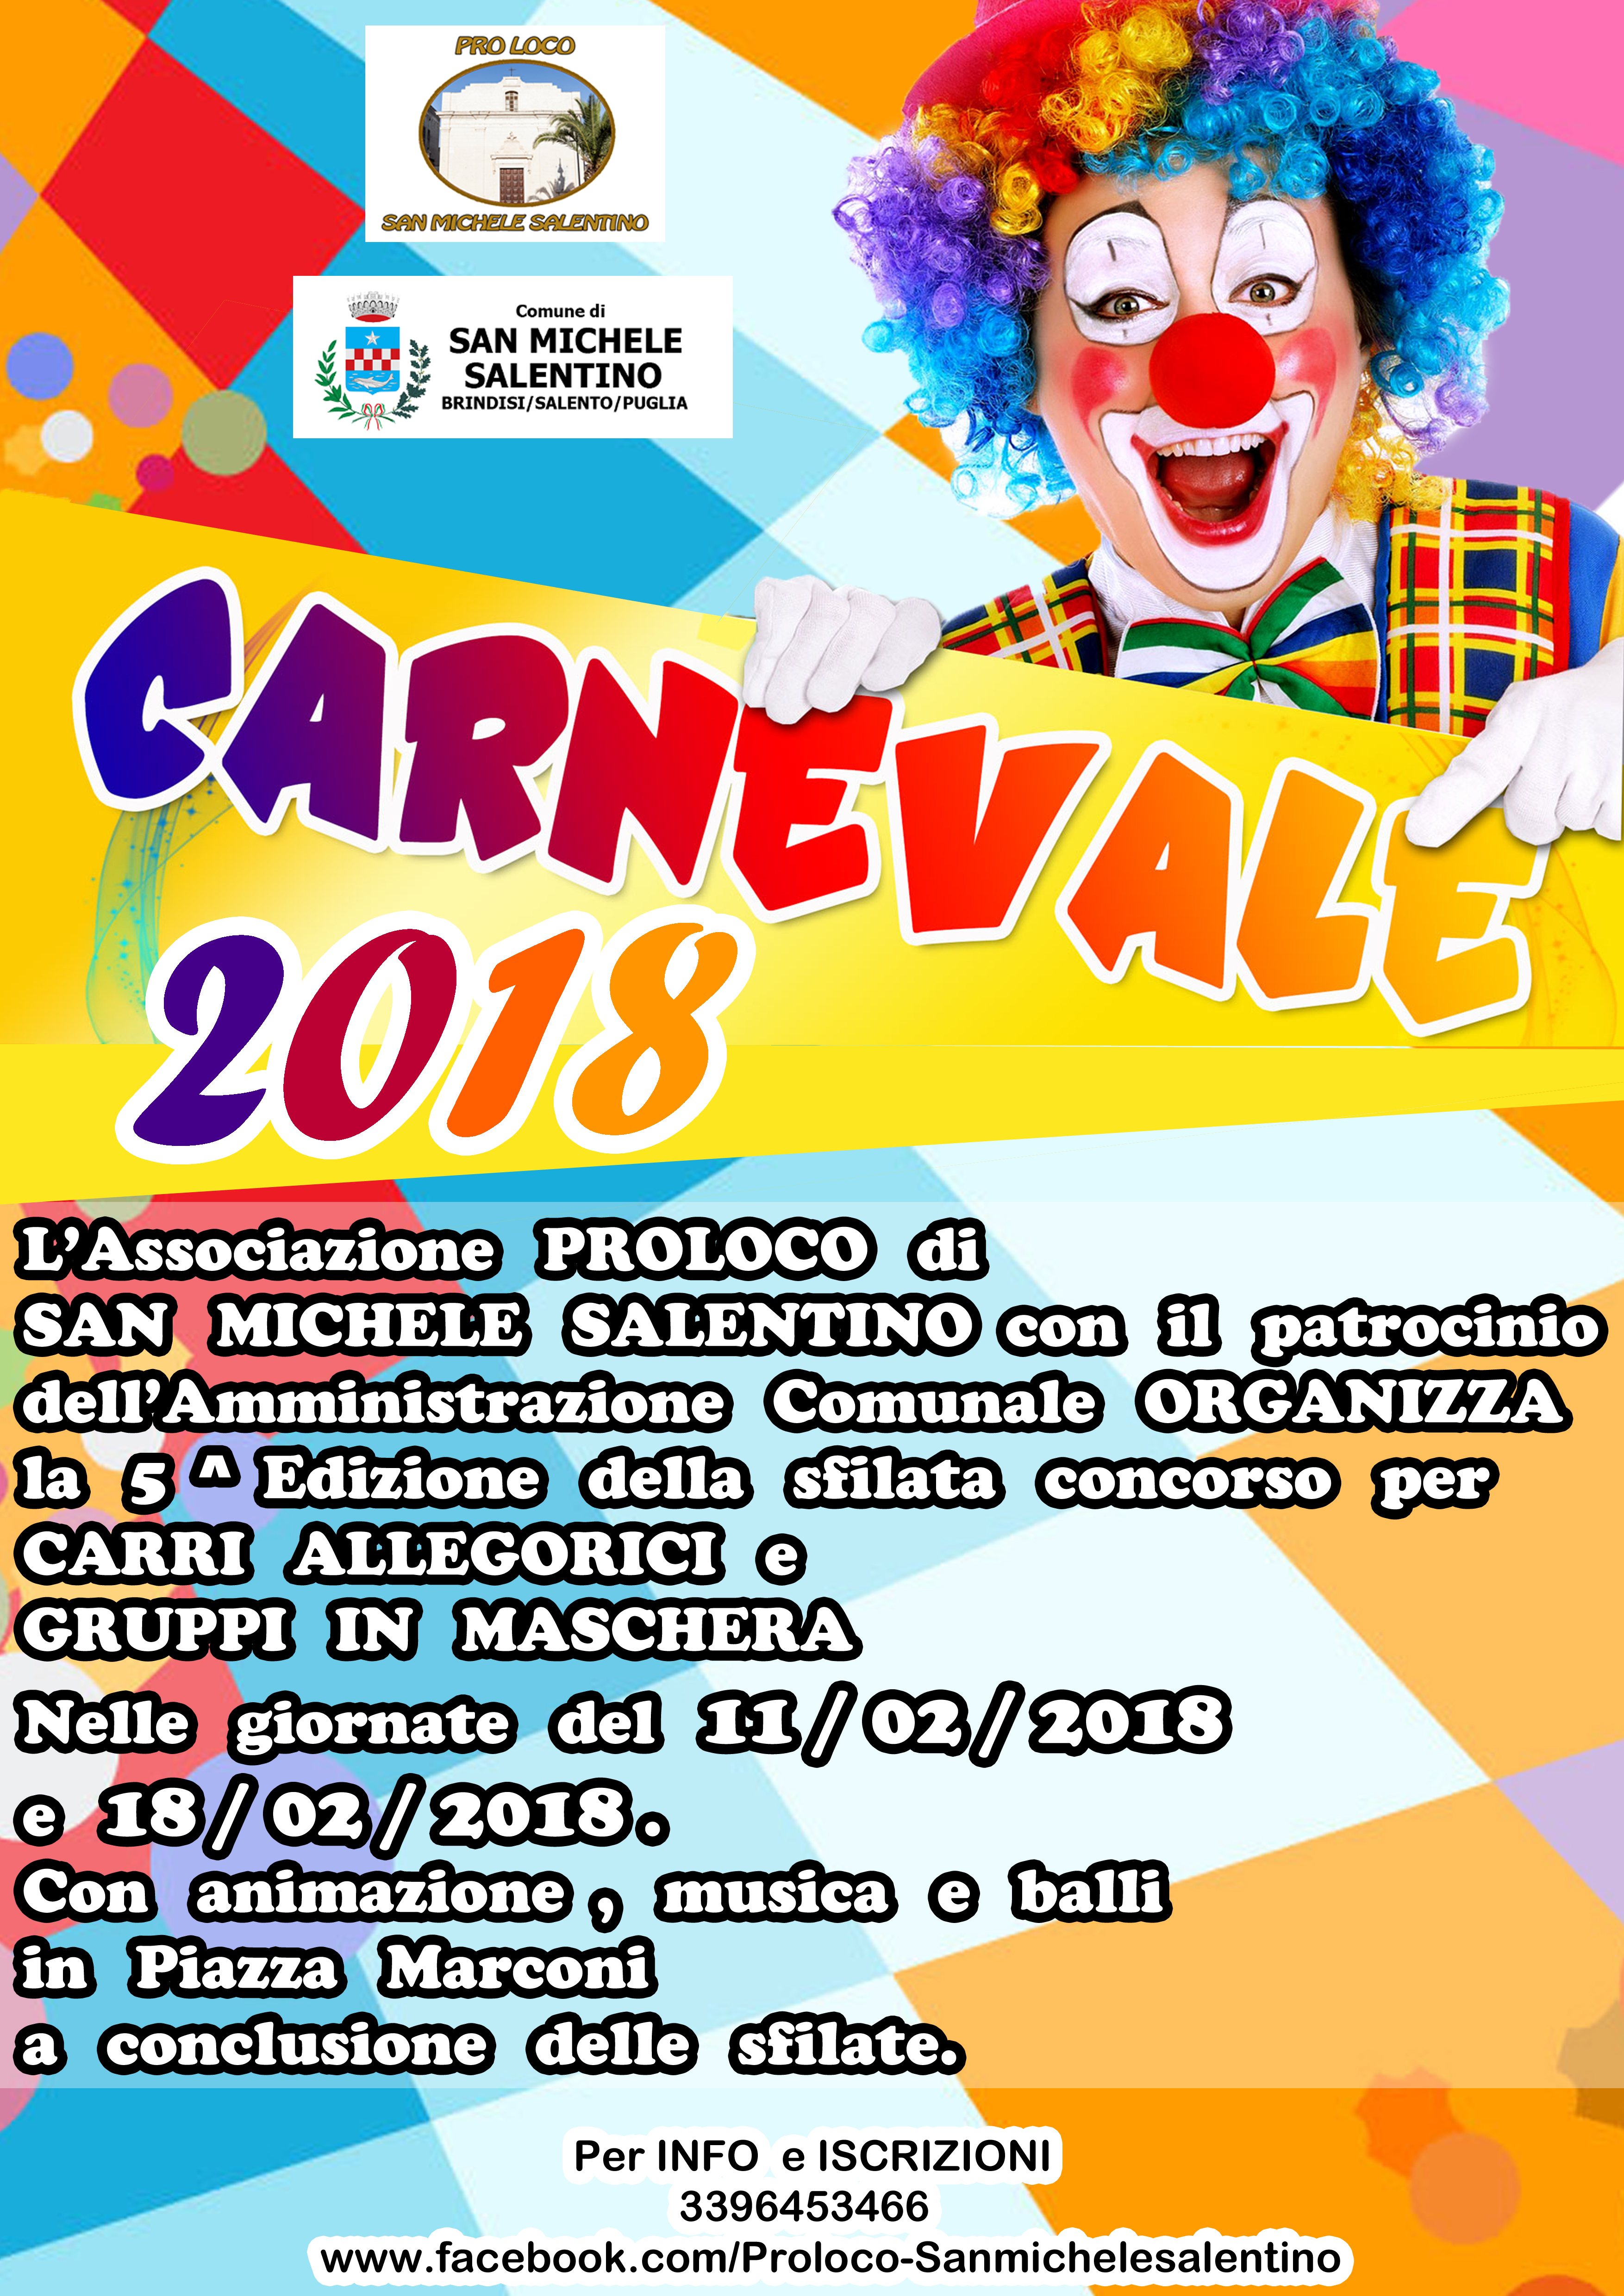 Carnevale Sammichelano 2018 5 Edizione Della Sfilata Concorso Per Carri Allegorici E Gruppi In Maschera Midiesis It